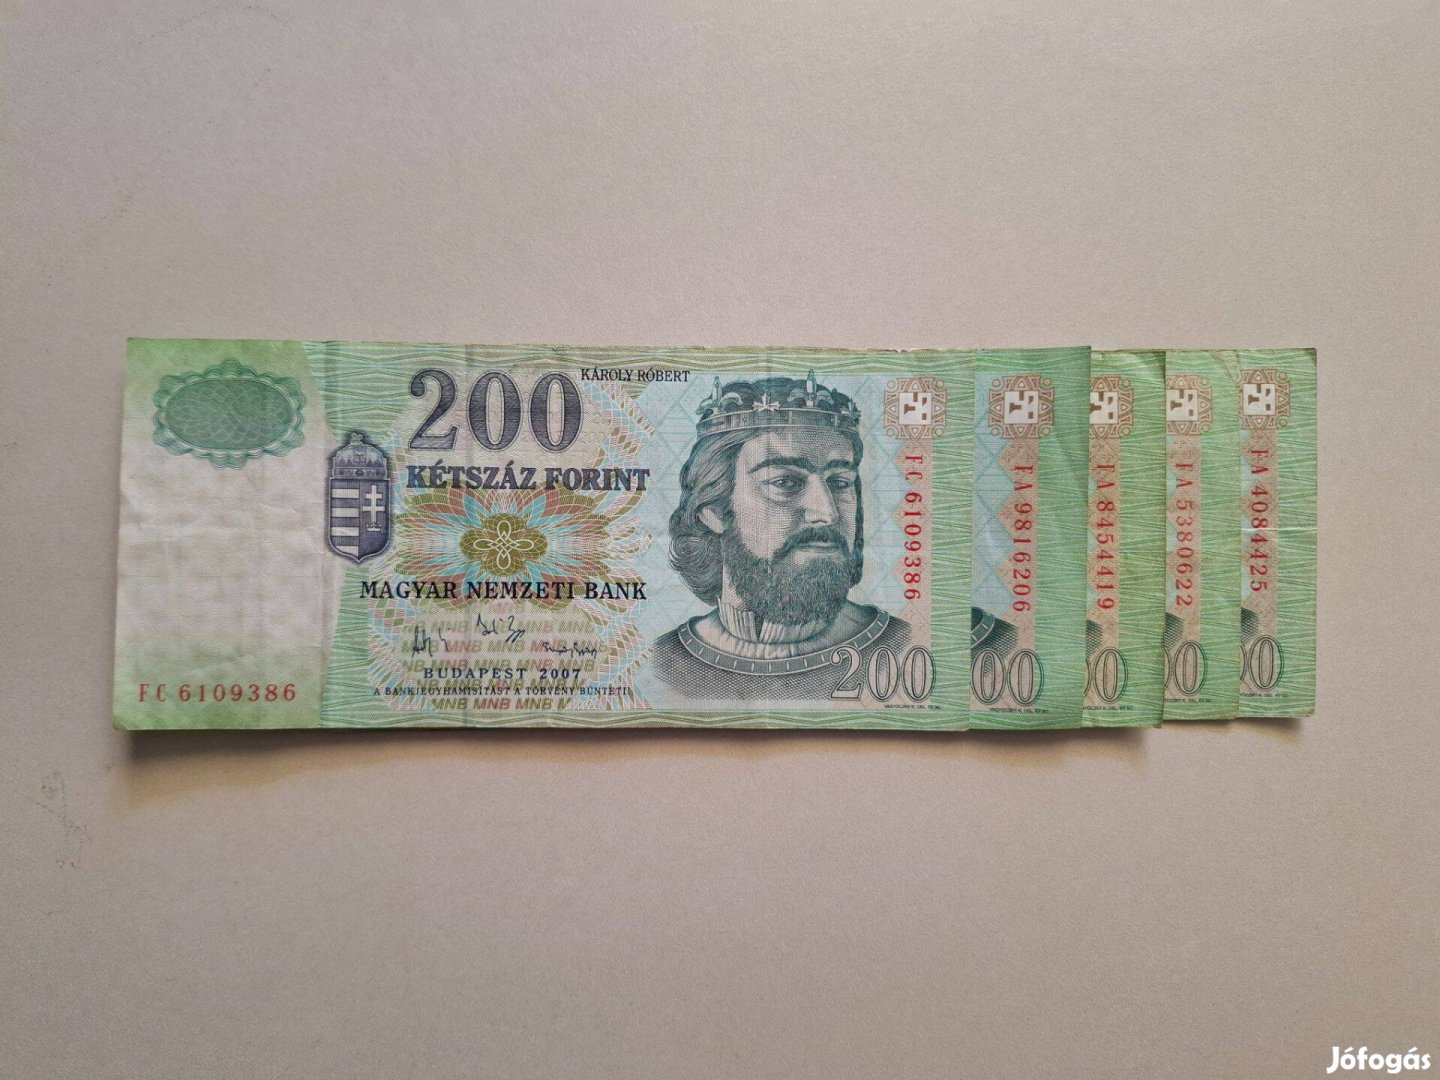 Papír 200ft-os bankjegy